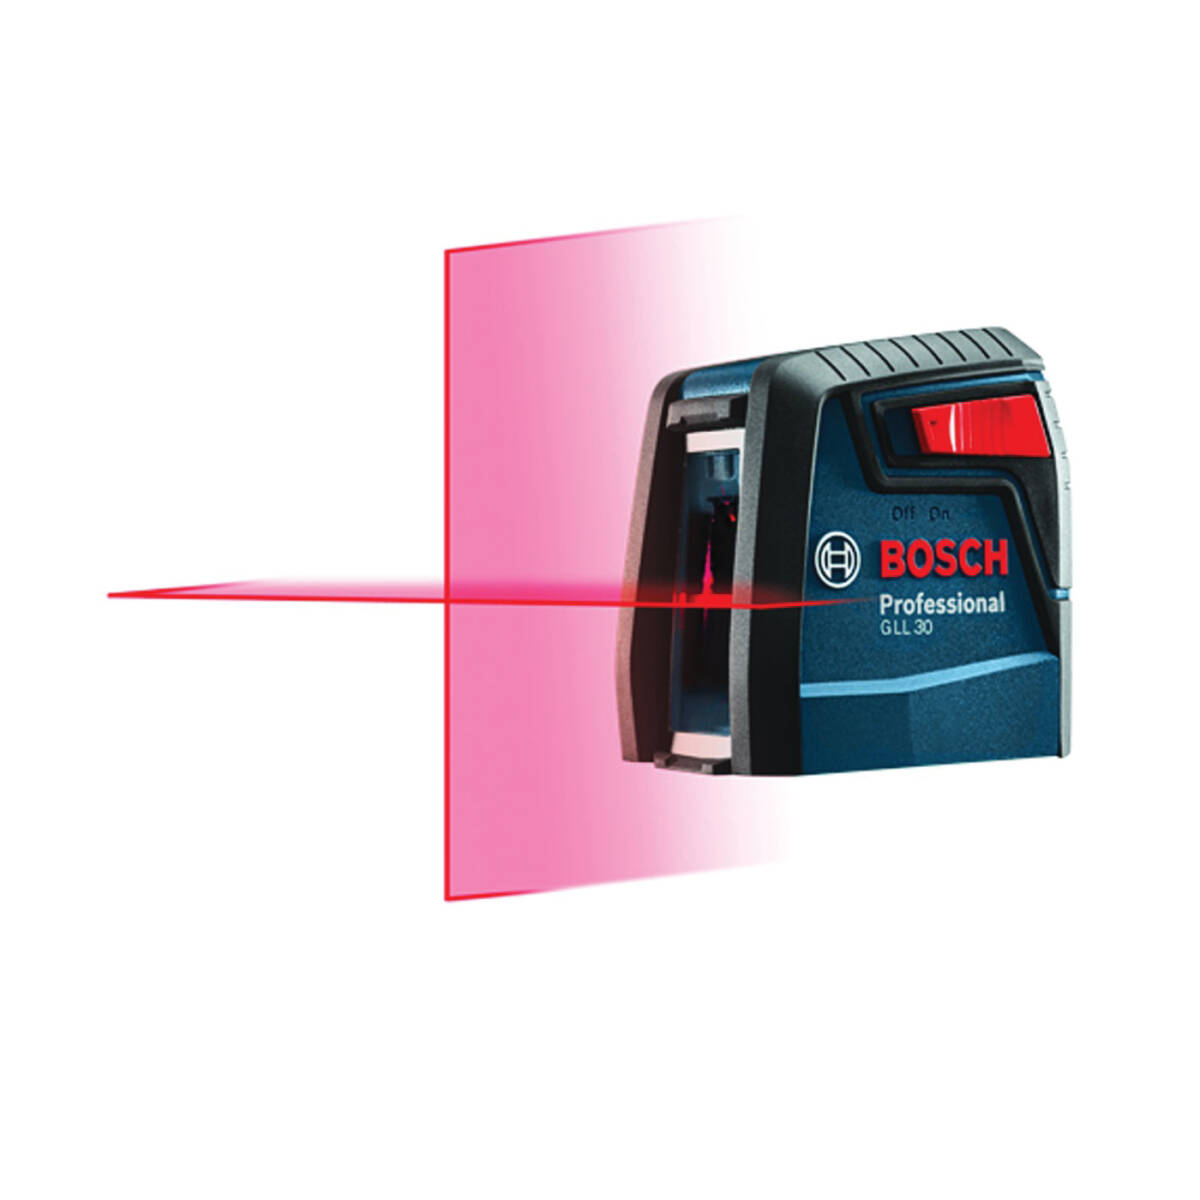 Bosch® GLL 30 